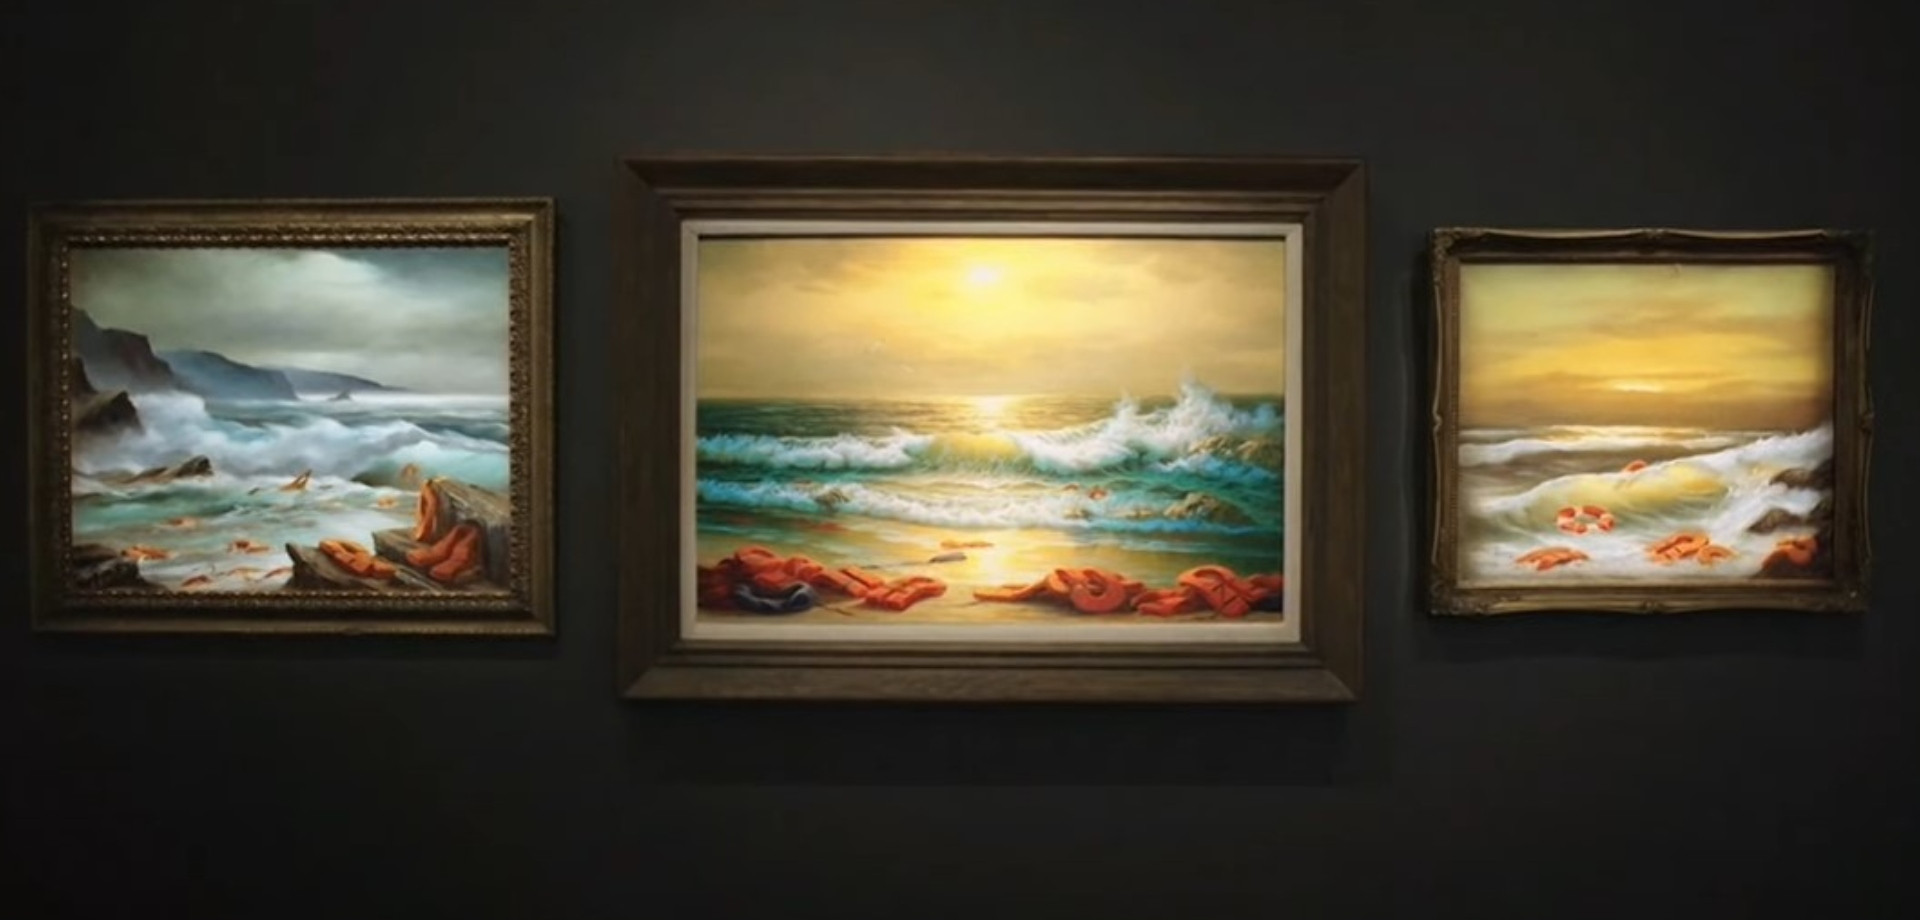 Τρεις πίνακες του Μπάνσκι πωλήθηκαν 2,4 εκατ. ευρώ για καλό σκοπό – Aπάντηση του καλλιτέχνη στη μεταναστευτική κρίση